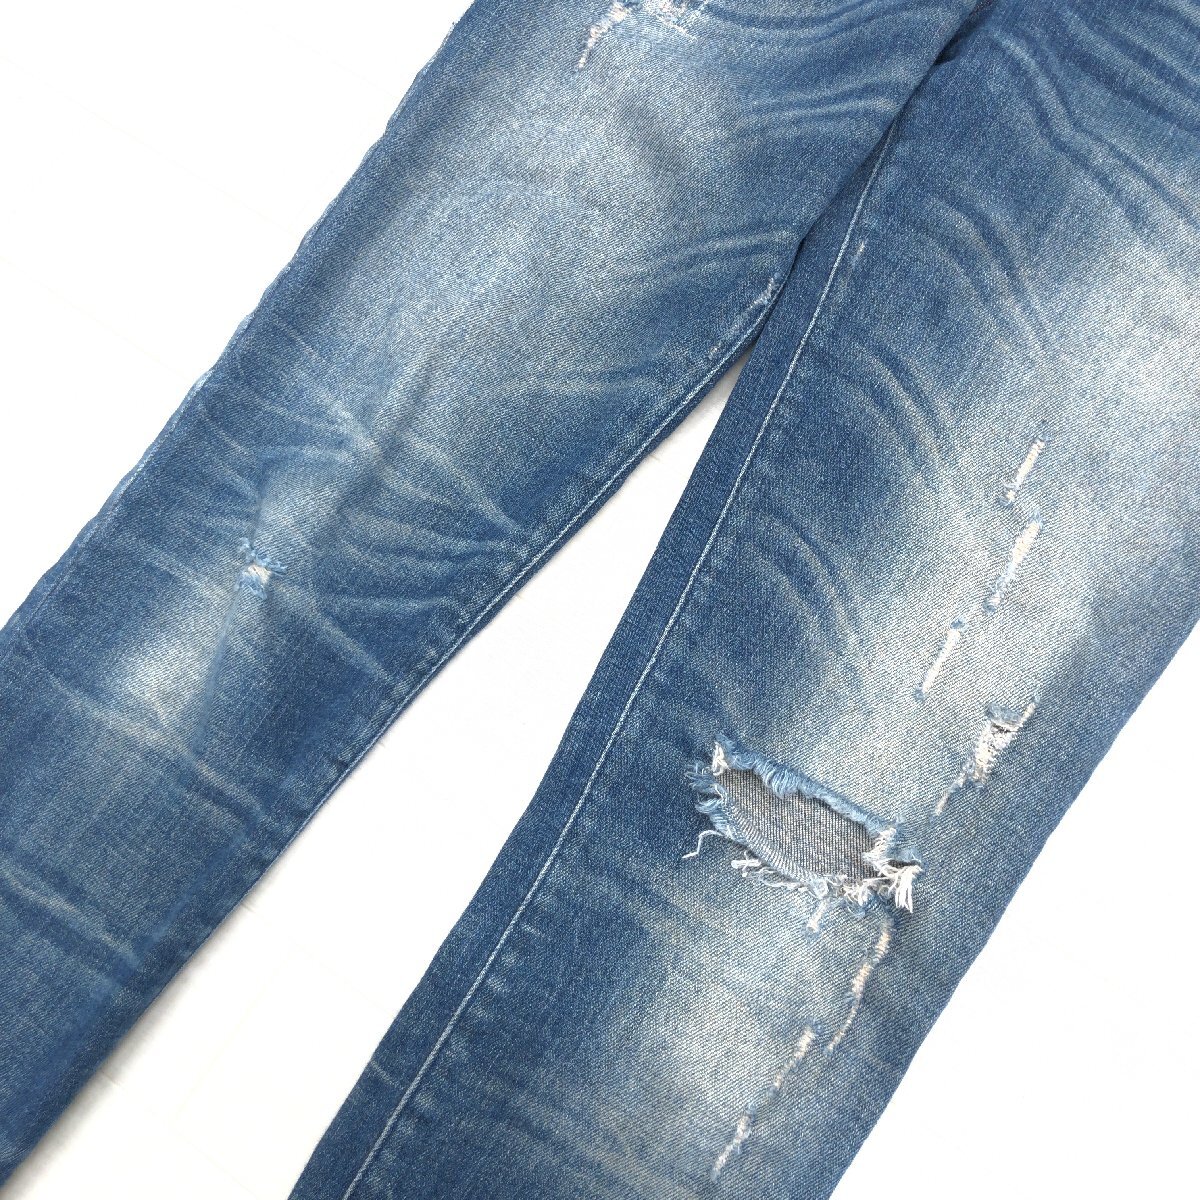  сделано в Италии DIESEL дизель Getlegg повреждение обработка стрейч Rollei z тонкий обтягивающие джинсы брюки 25 w72 темно-синий индиго джинсы 